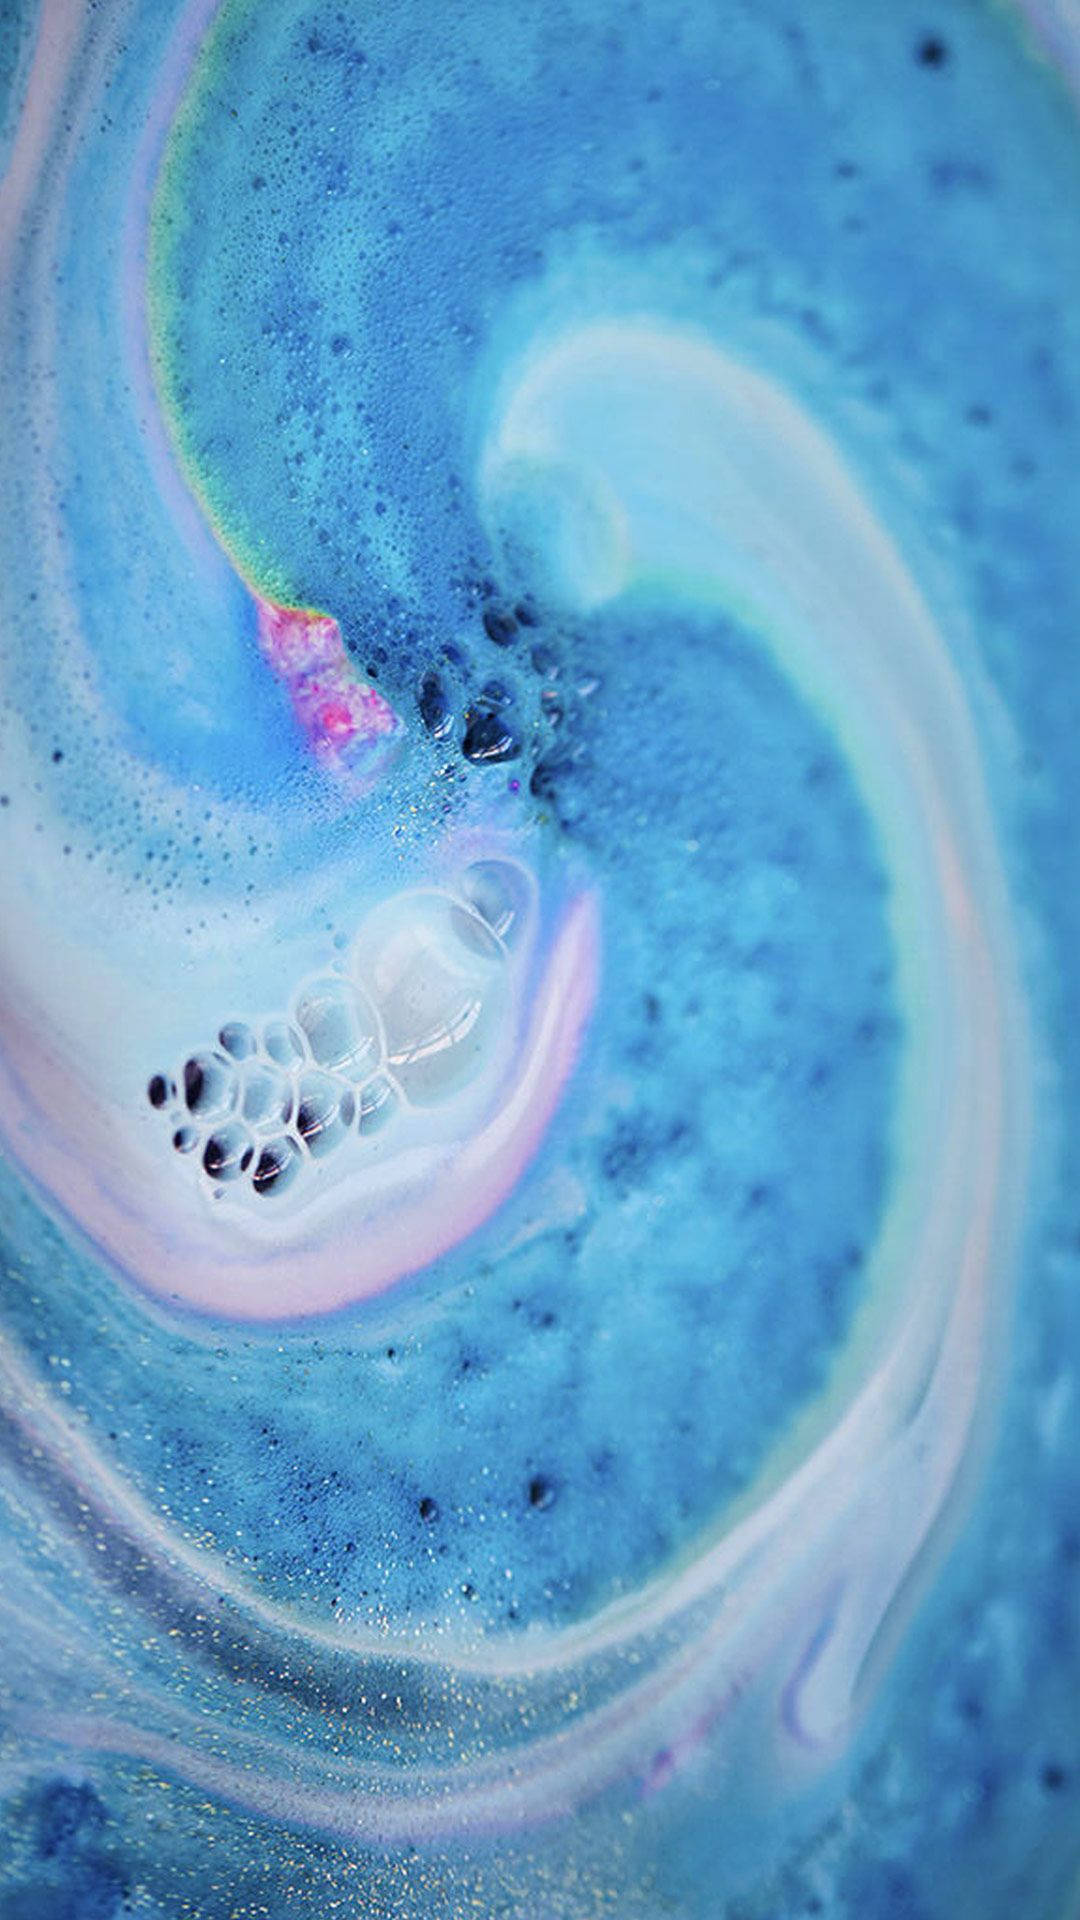 Embrace the Vibrance - Lush Bath Bomb Explosion Wallpaper